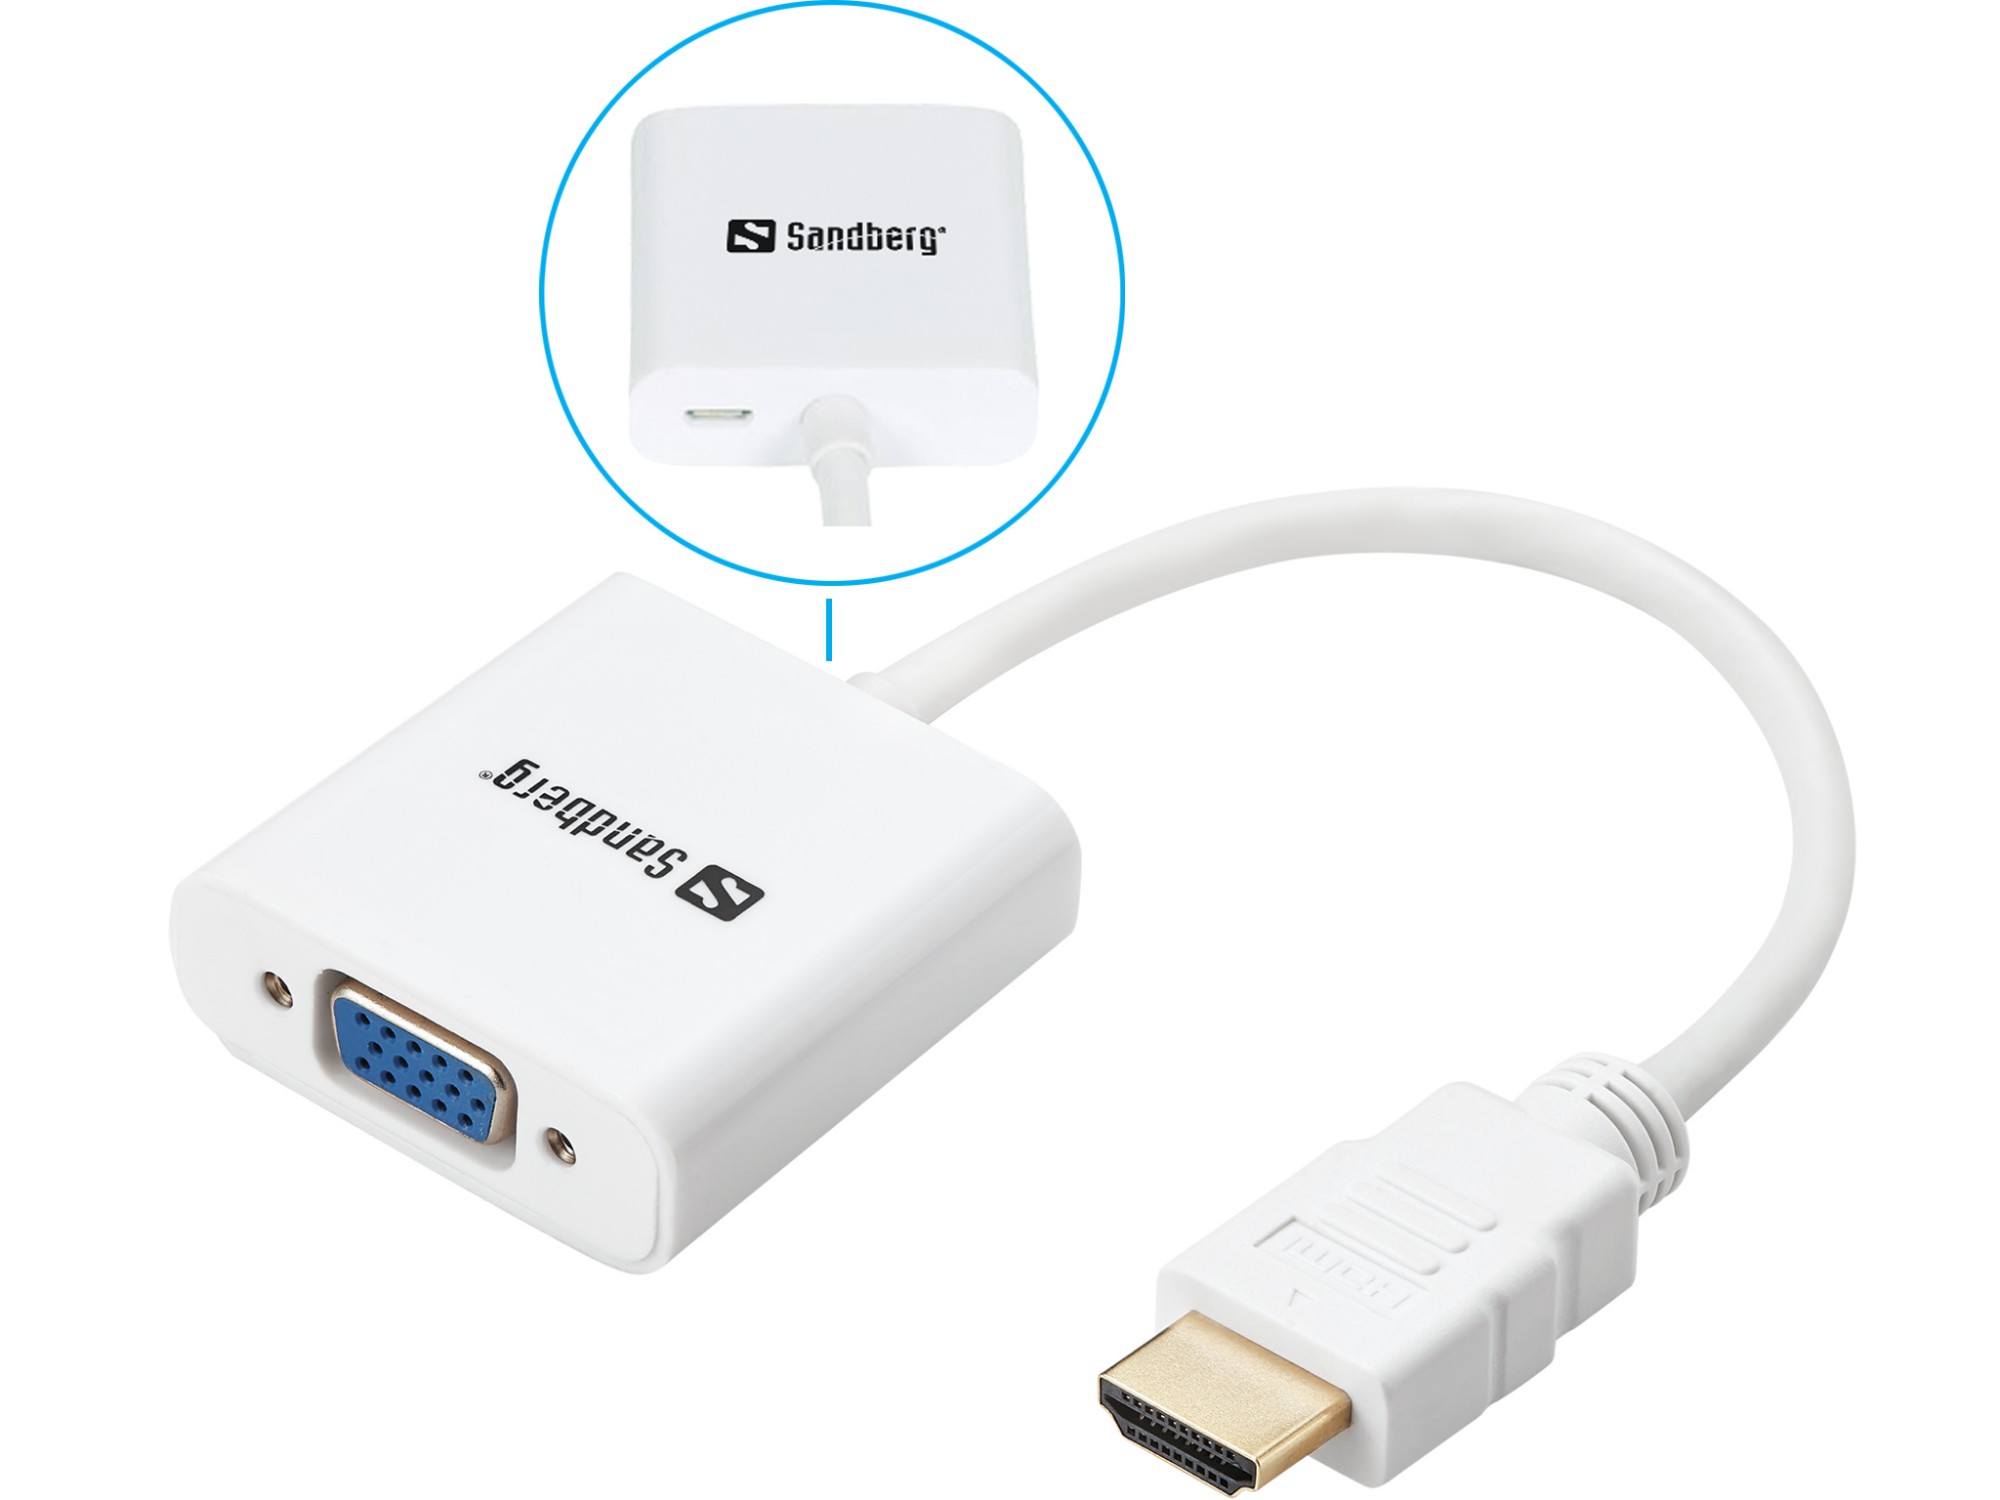 Photos - Cable (video, audio, USB) Sandberg HDMI to VGA Converter 508-69 